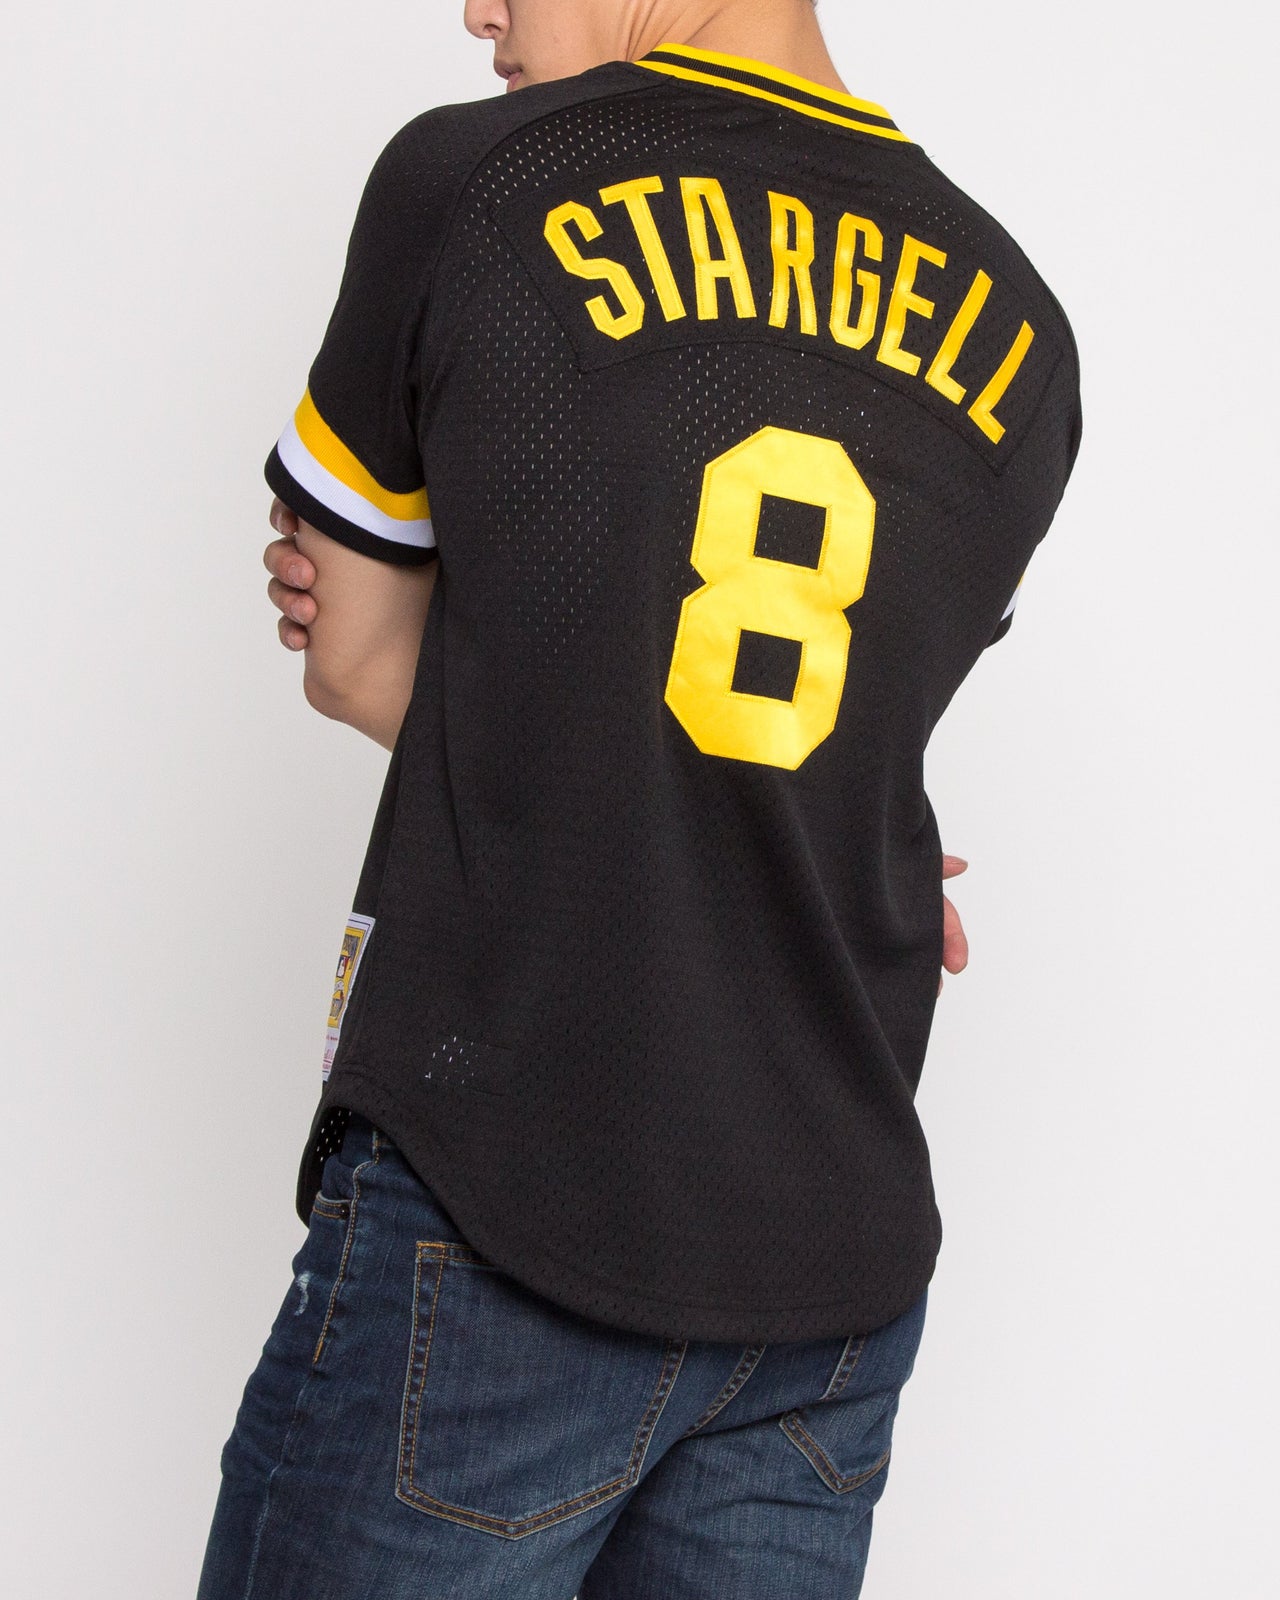 Willie Stargell Batting Practice Jersey – Jackthreads Development Store